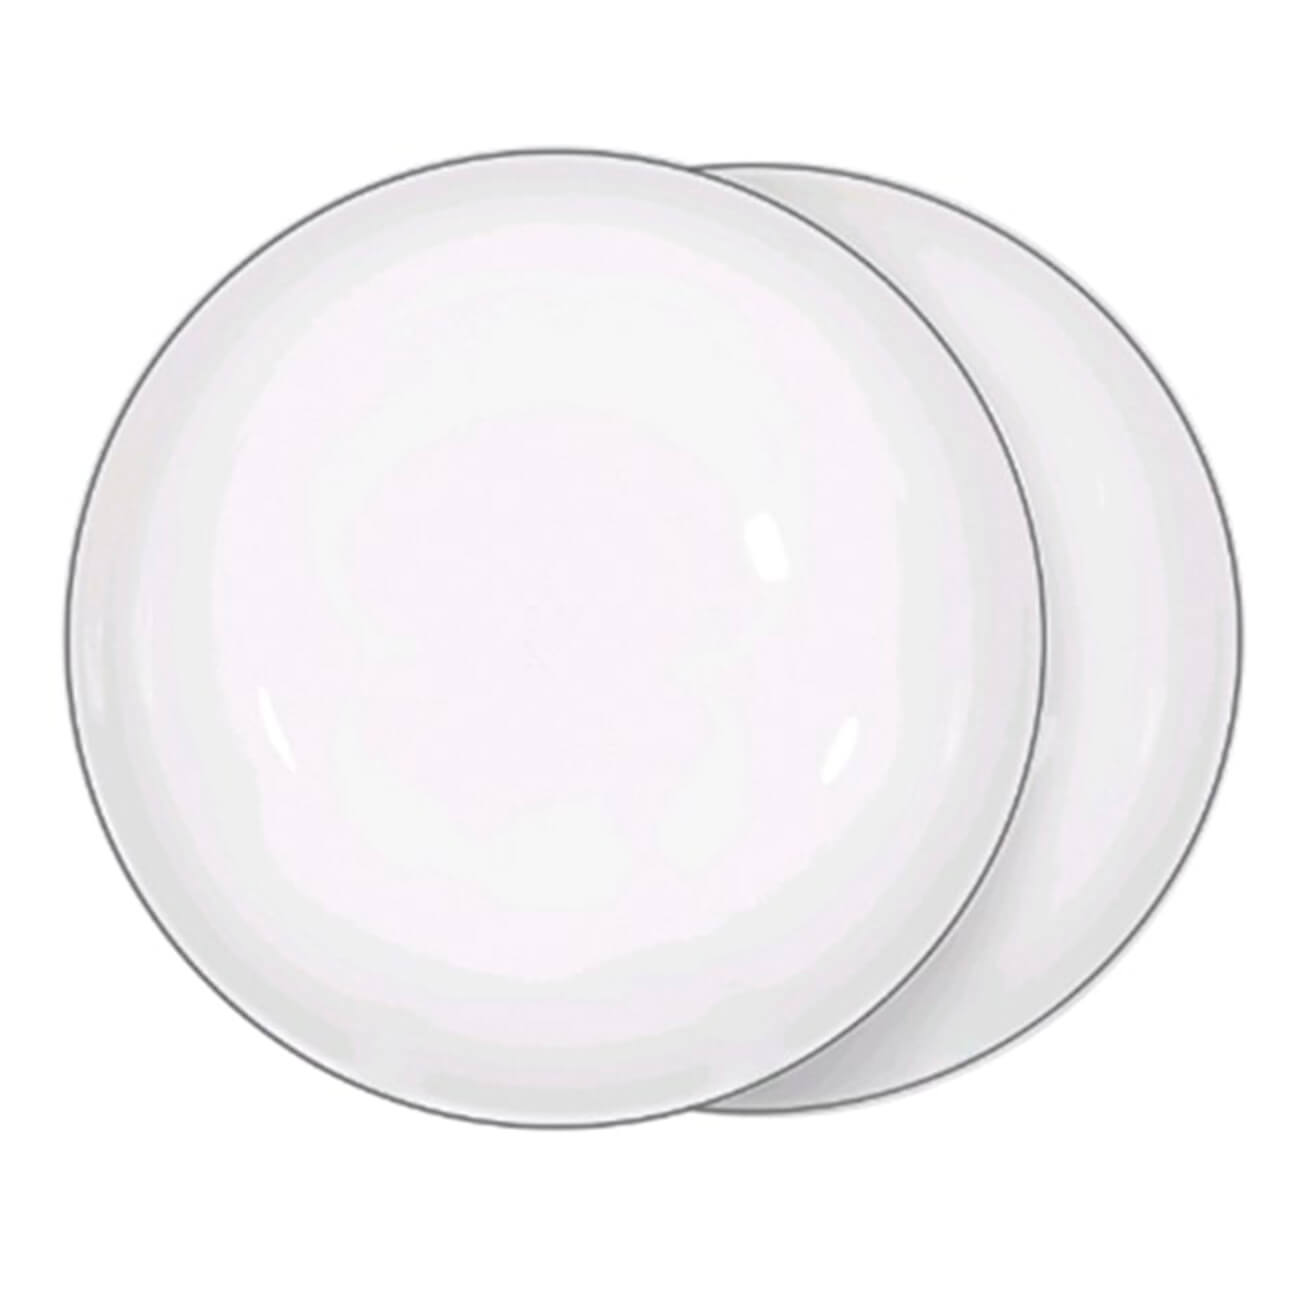 Тарелка суповая, 20х5 см, 2 шт, фарфор F, белая, Ideal silver тарелка суповая 20х5 см 2 шт фарфор f белая ideal white